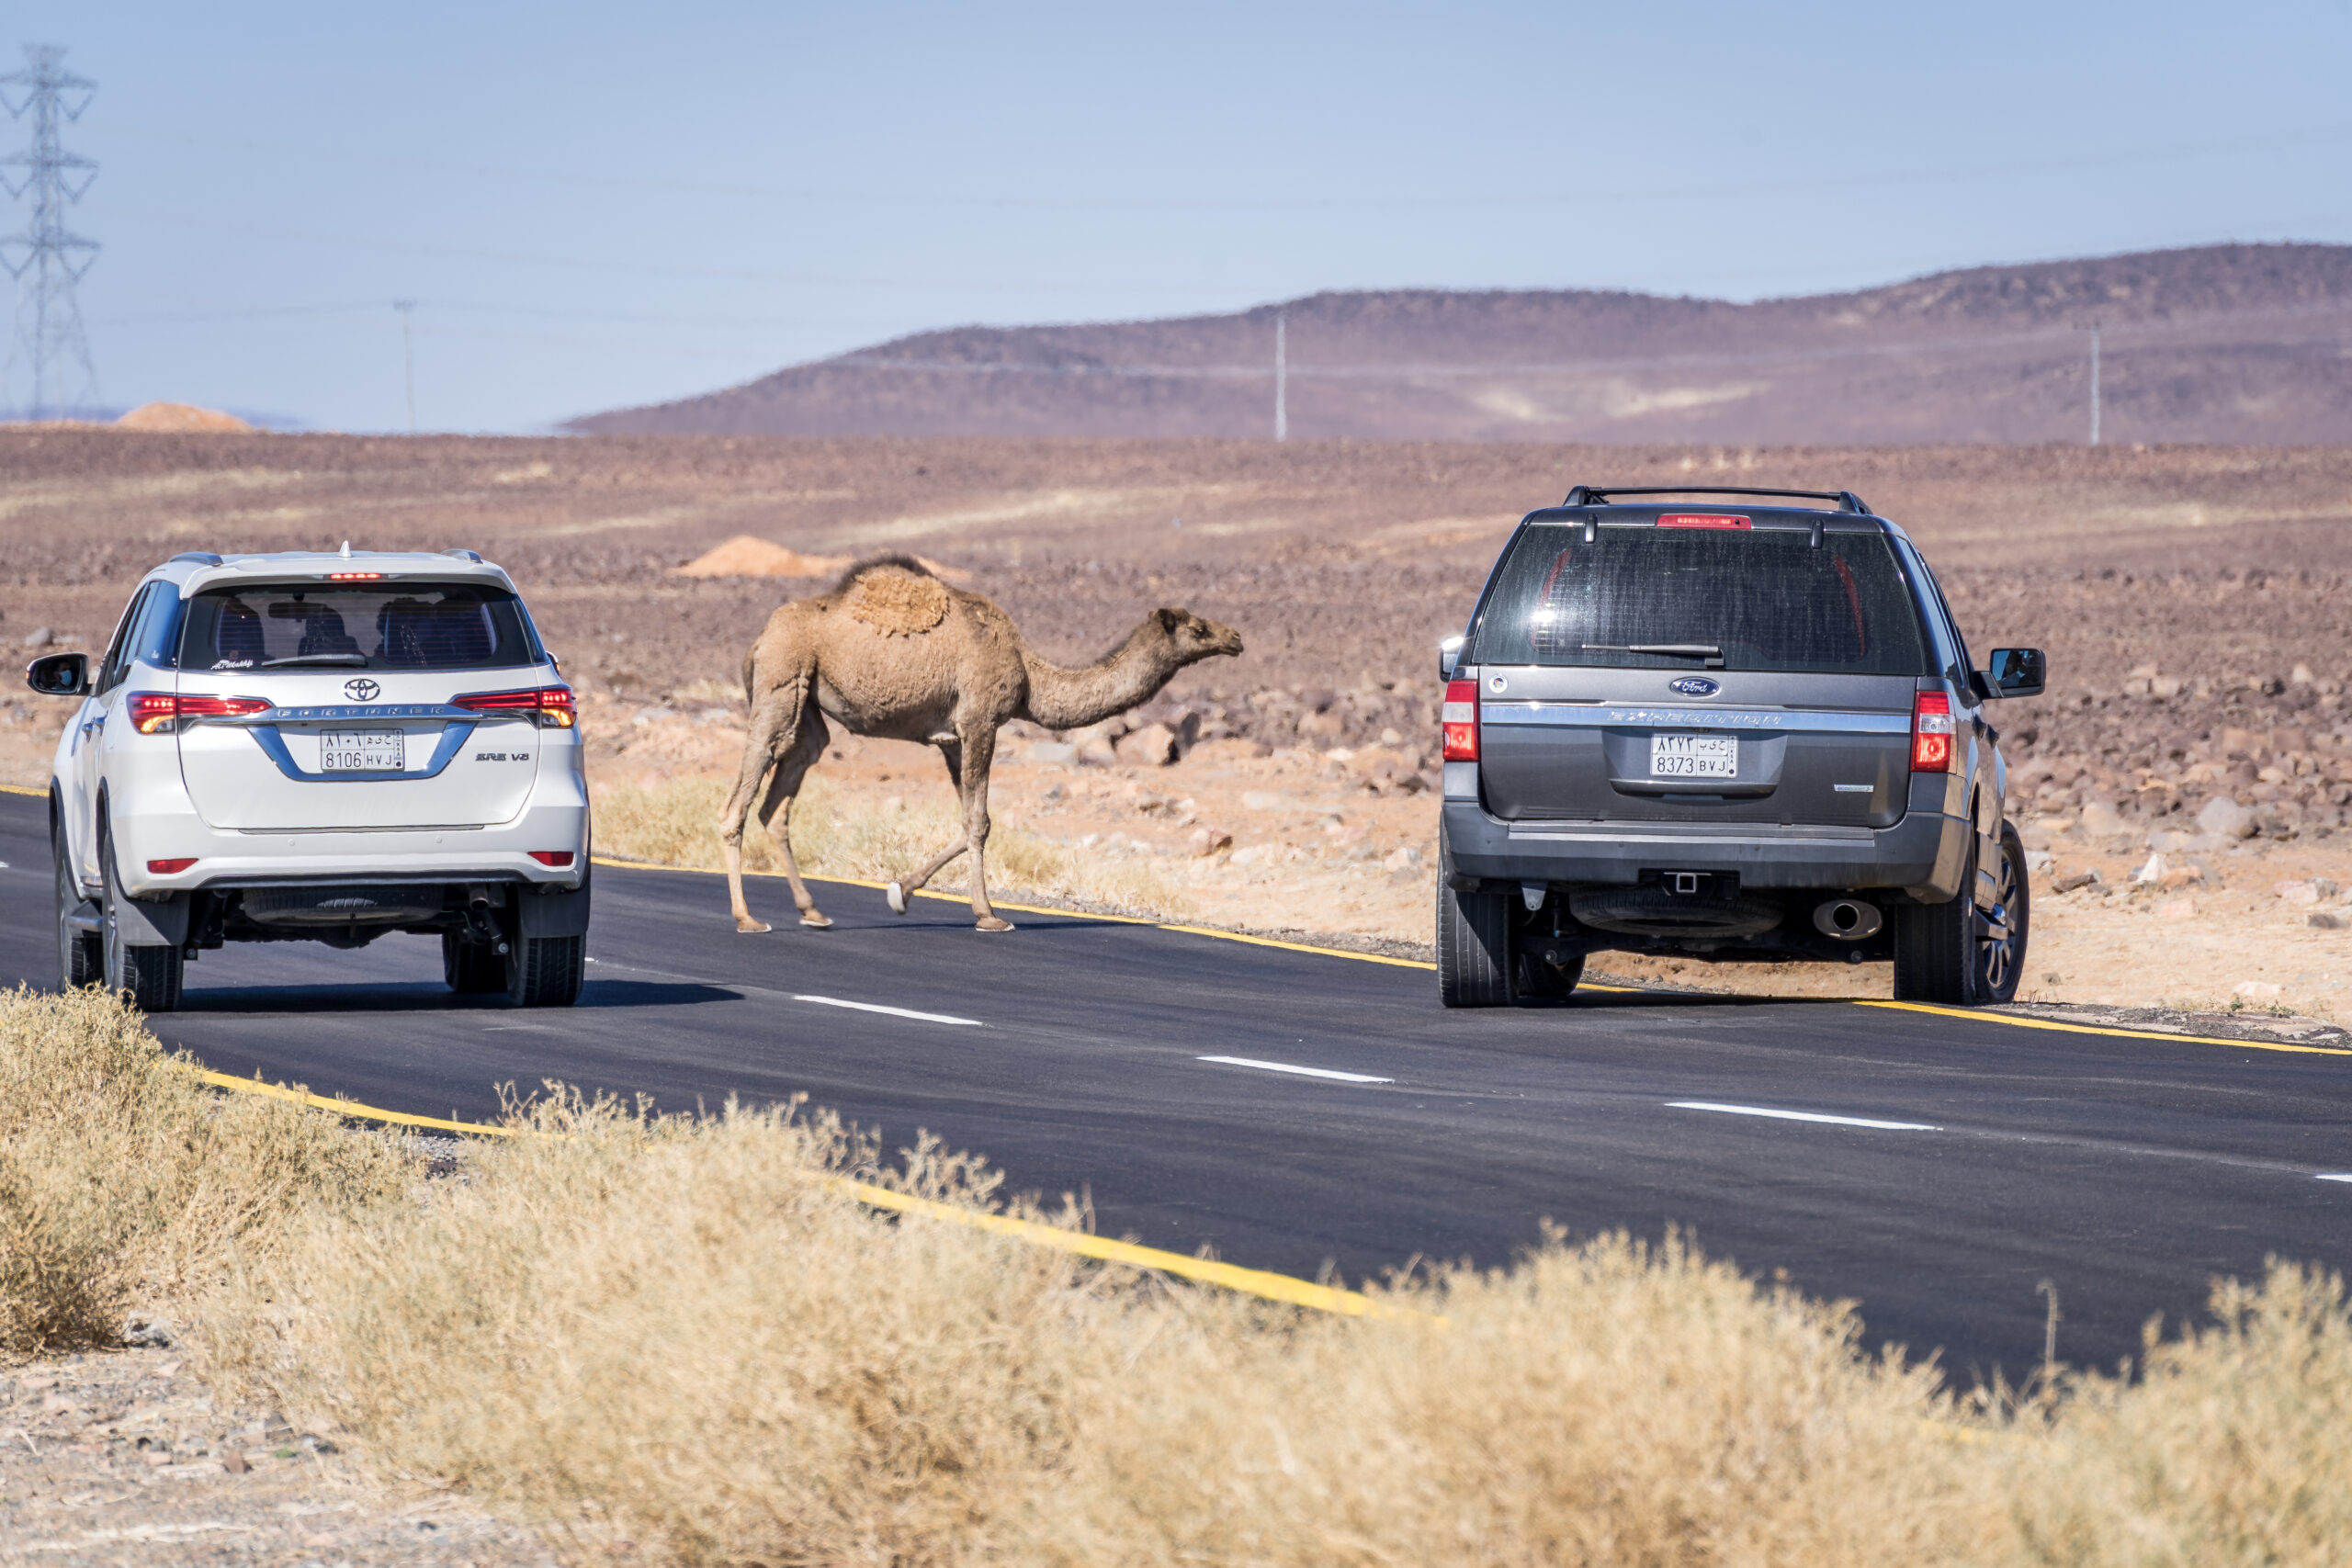 Kamel auf der Straße